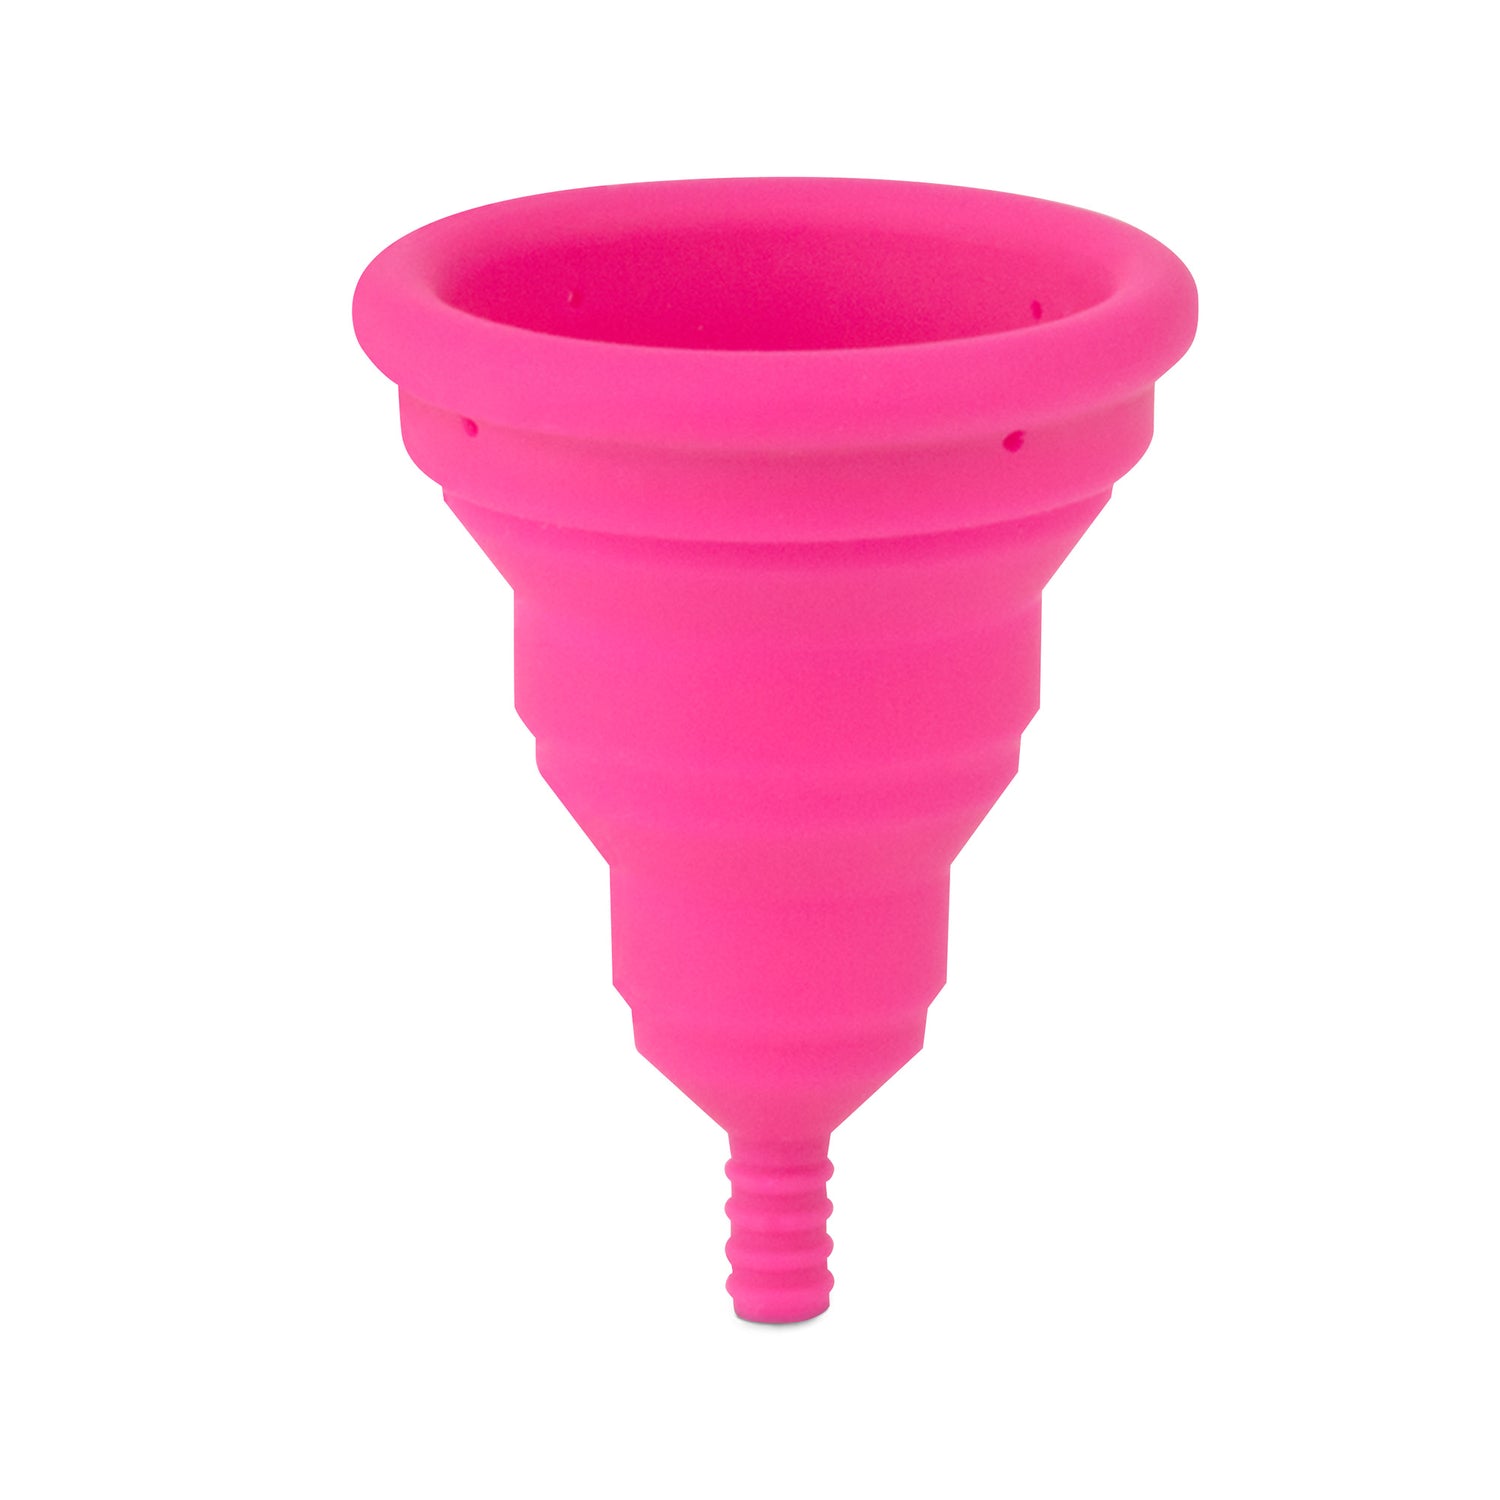 Lily Cup Compact menstrualna čašica B 1